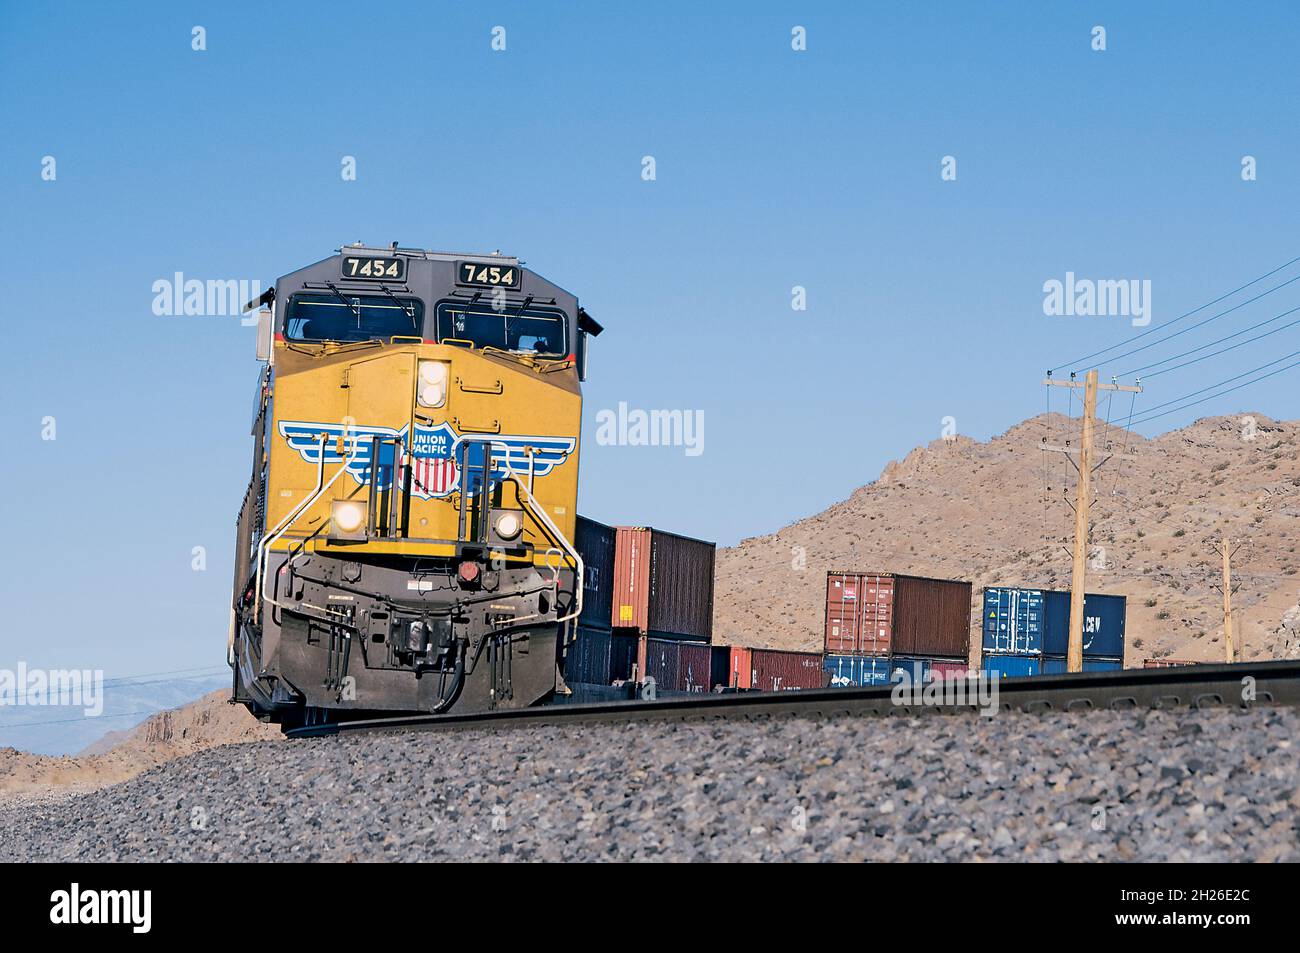 Union Pacific Doublestack Train in Desert Stock Photo